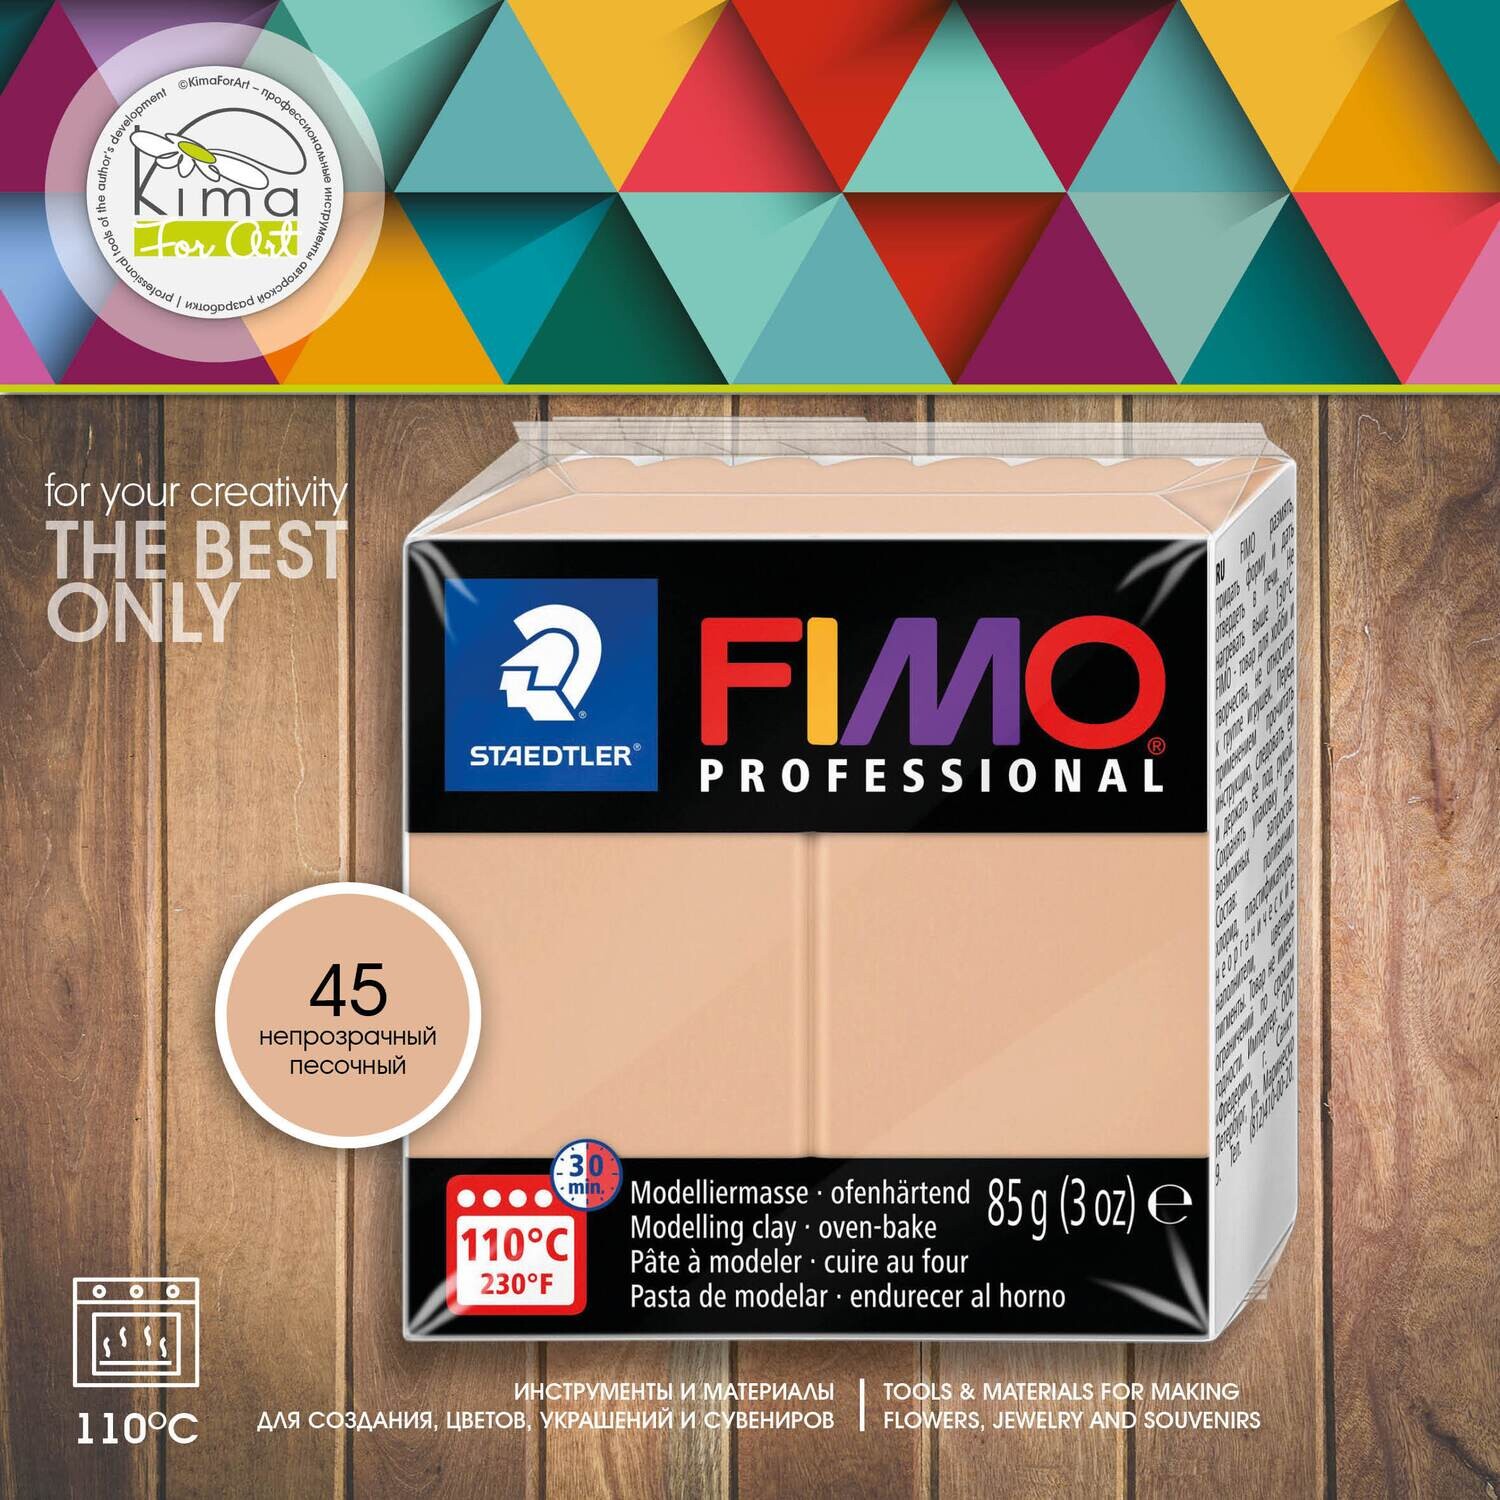 FIMO Professional 02